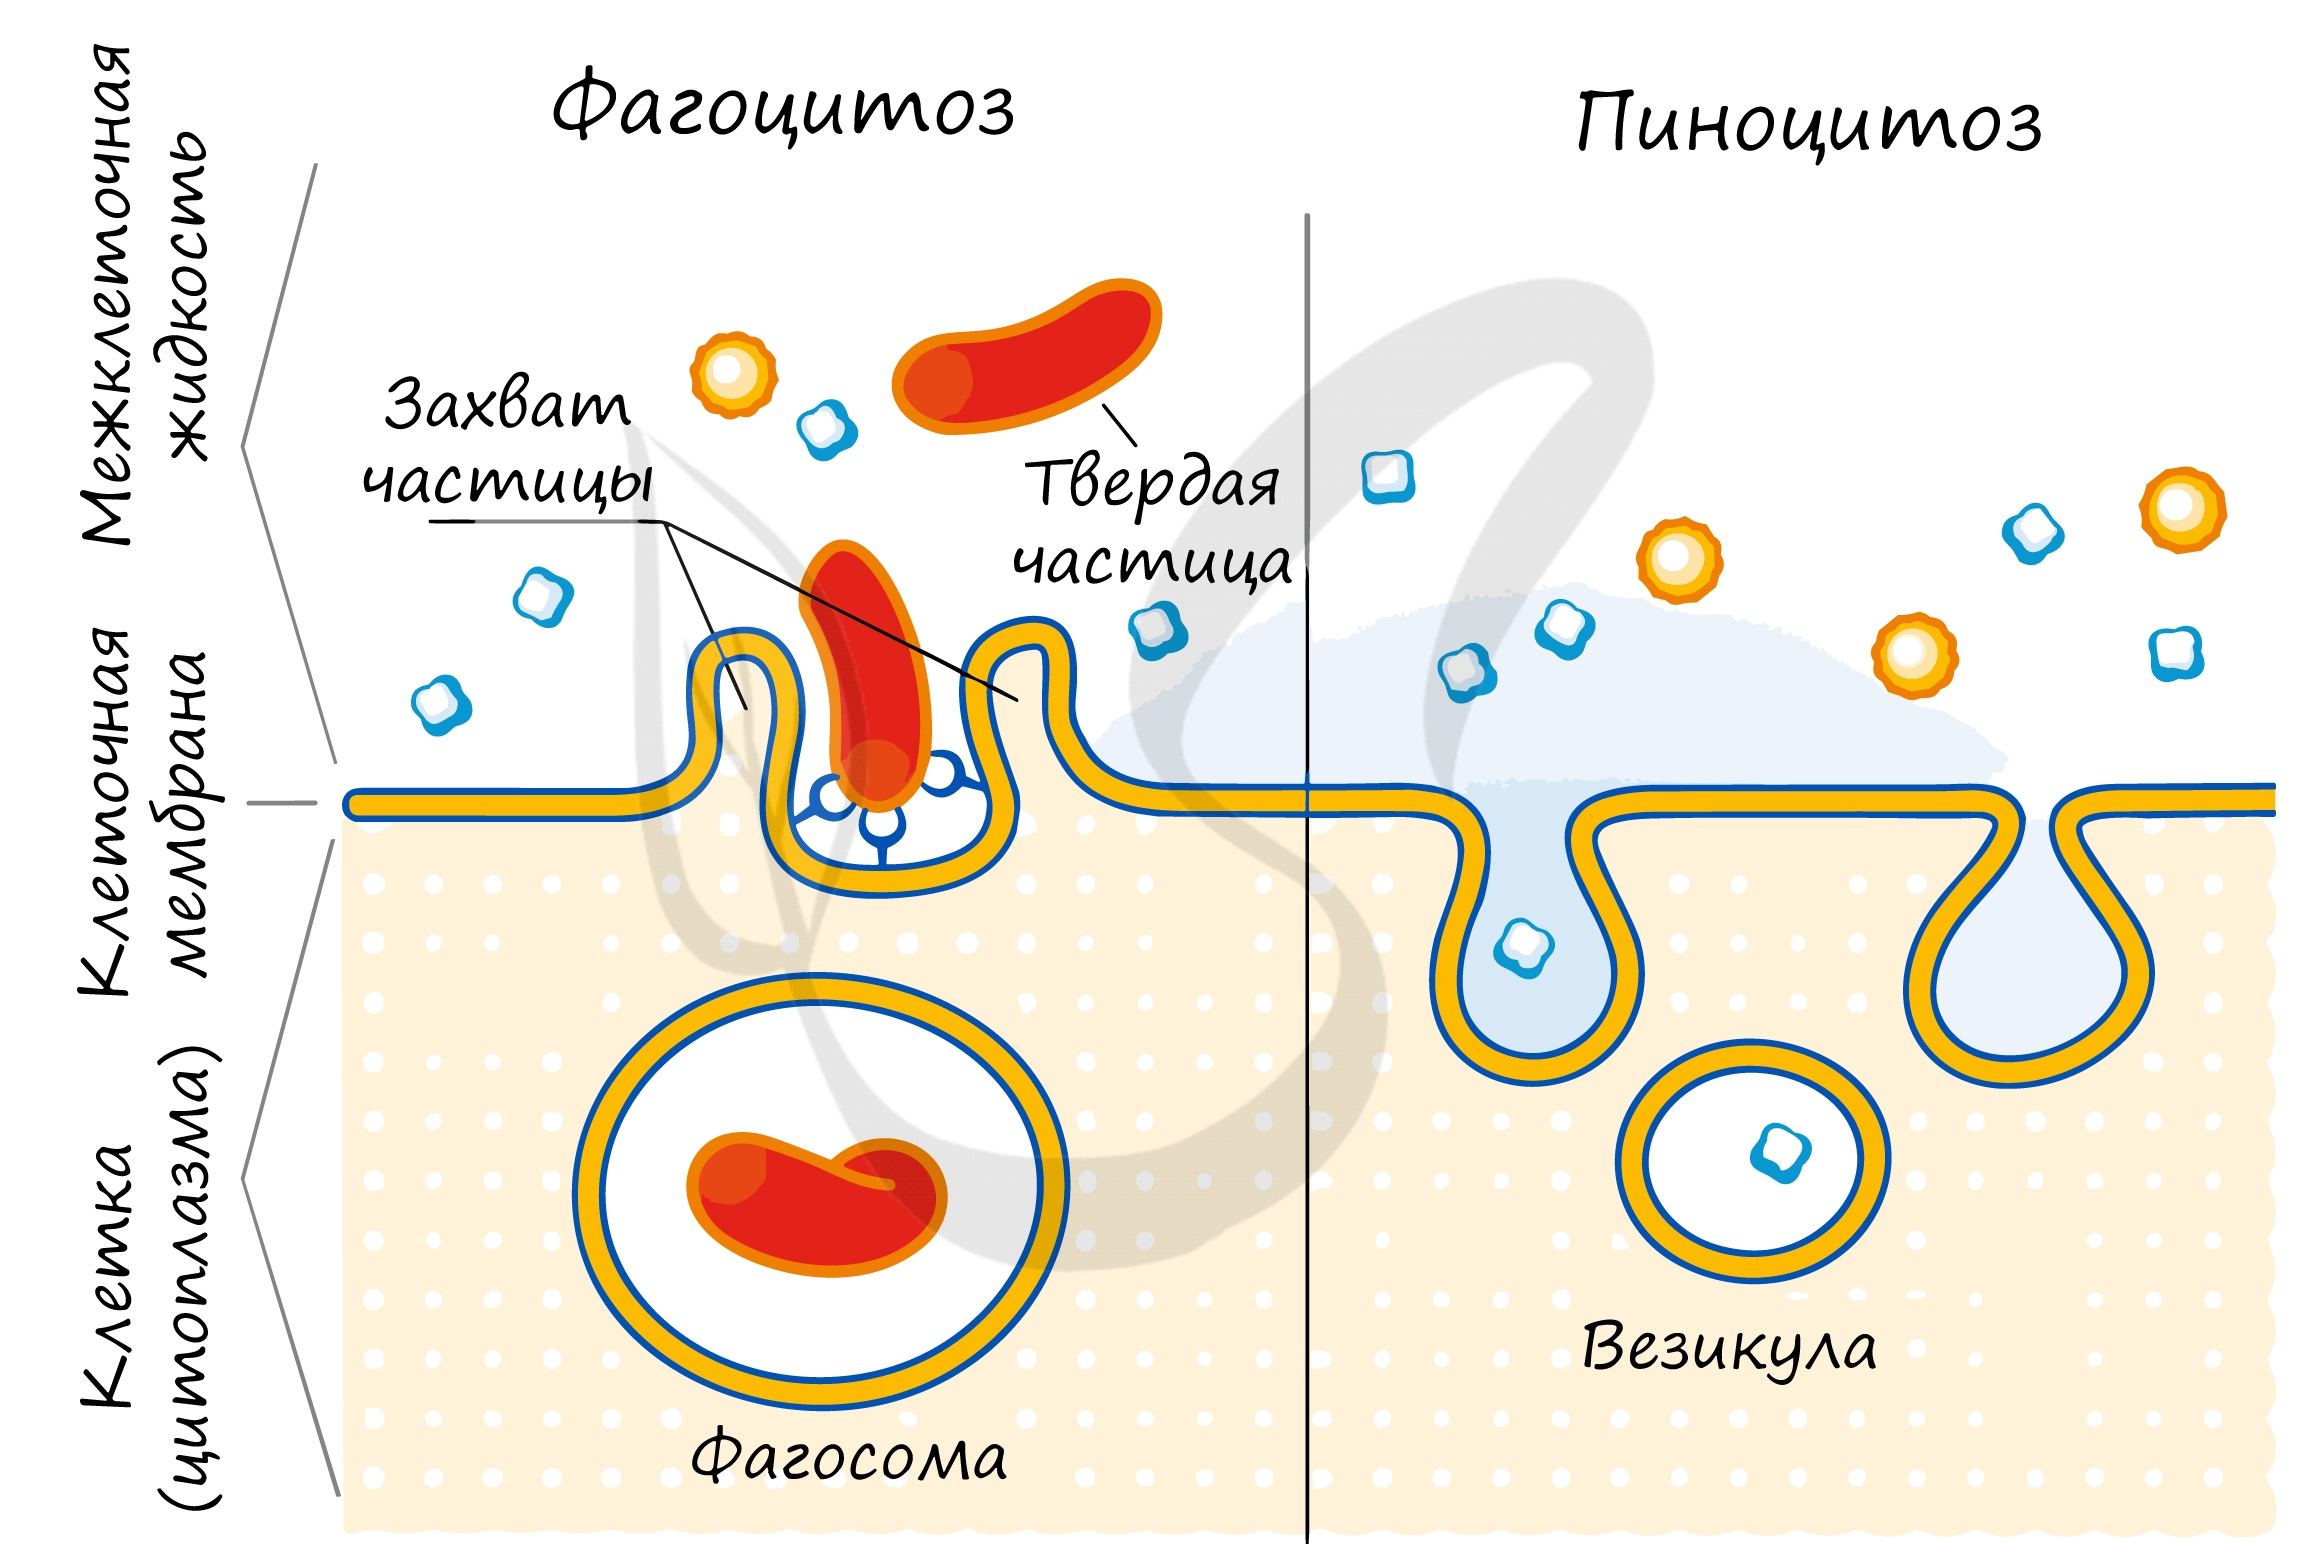 Фагоцитозный пузырек. Схема фагоцитоза и пиноцитоза. Фагоцитоз пиноцитоз эндоцитоз схема. Схема эндоцитоза. Эндоцитоз экзоцитоз фагоцитоз это.